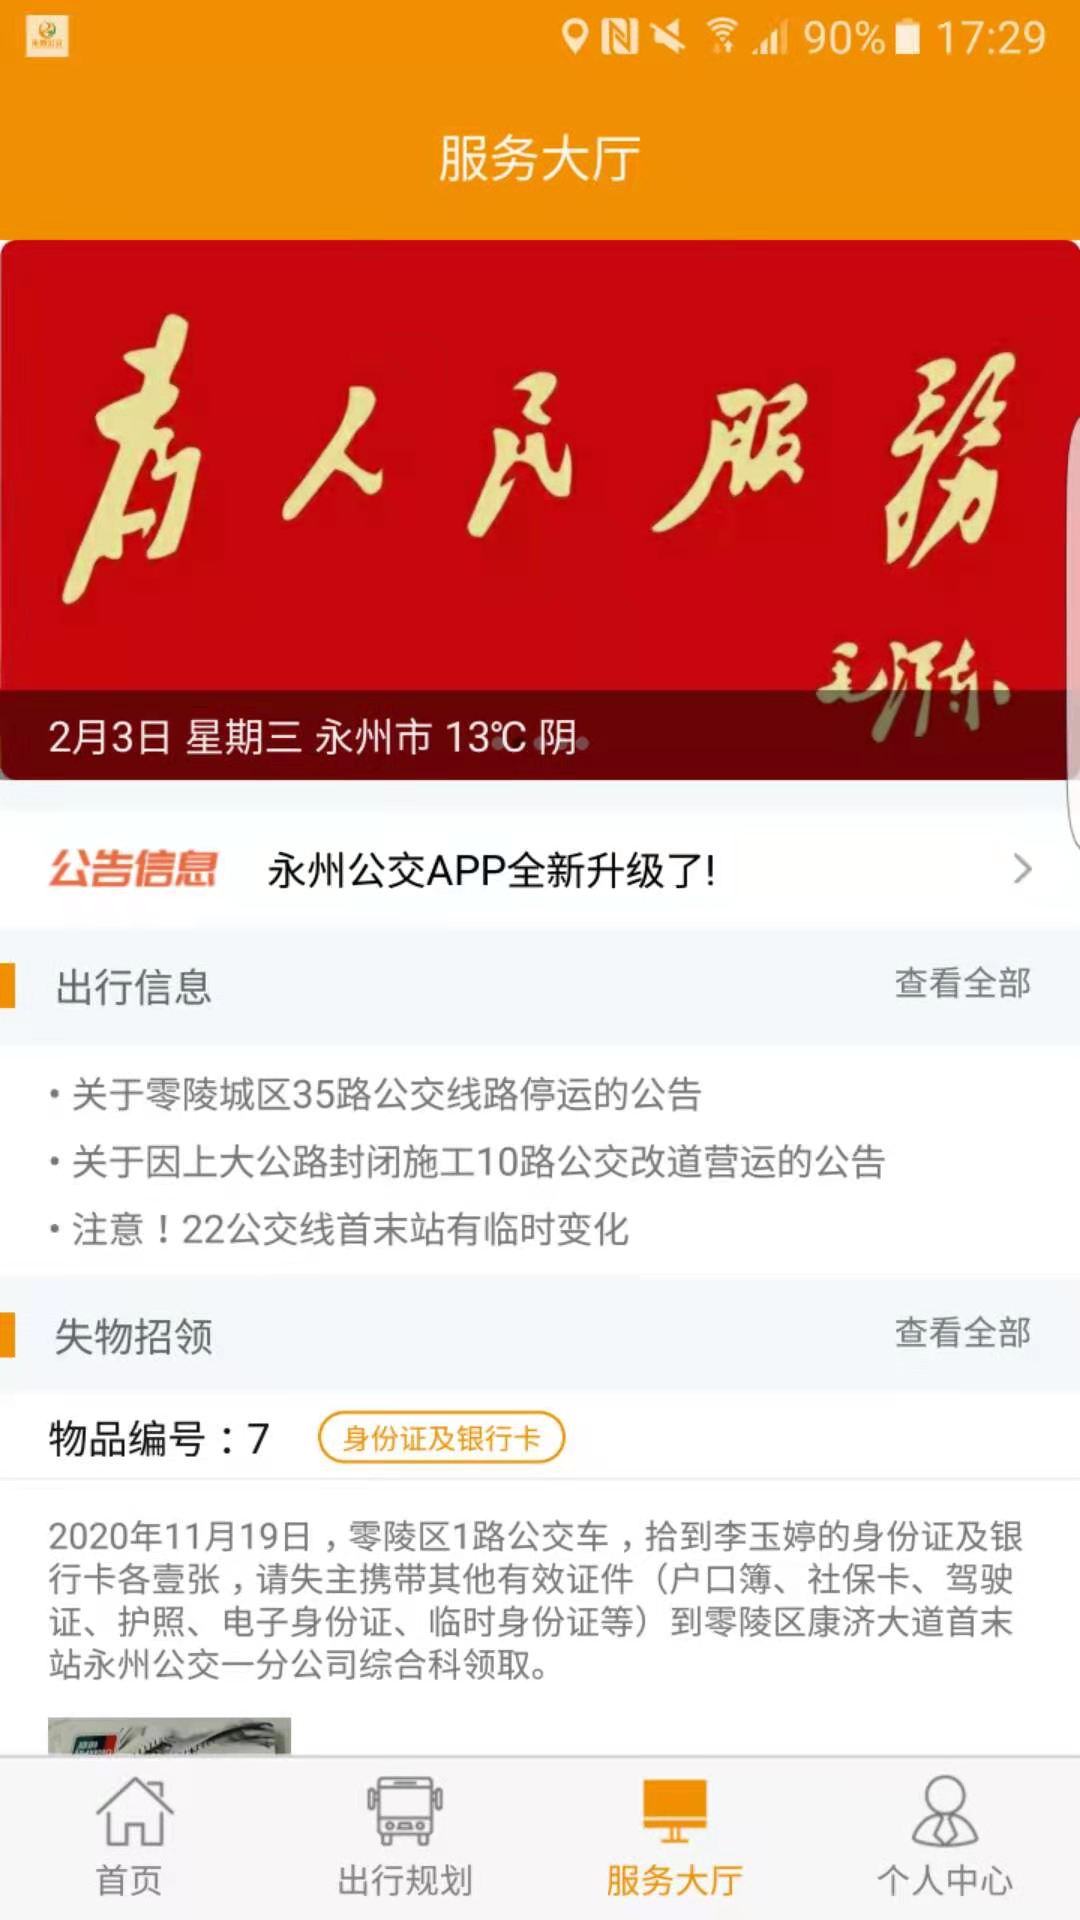 永州公交appv1.2.0